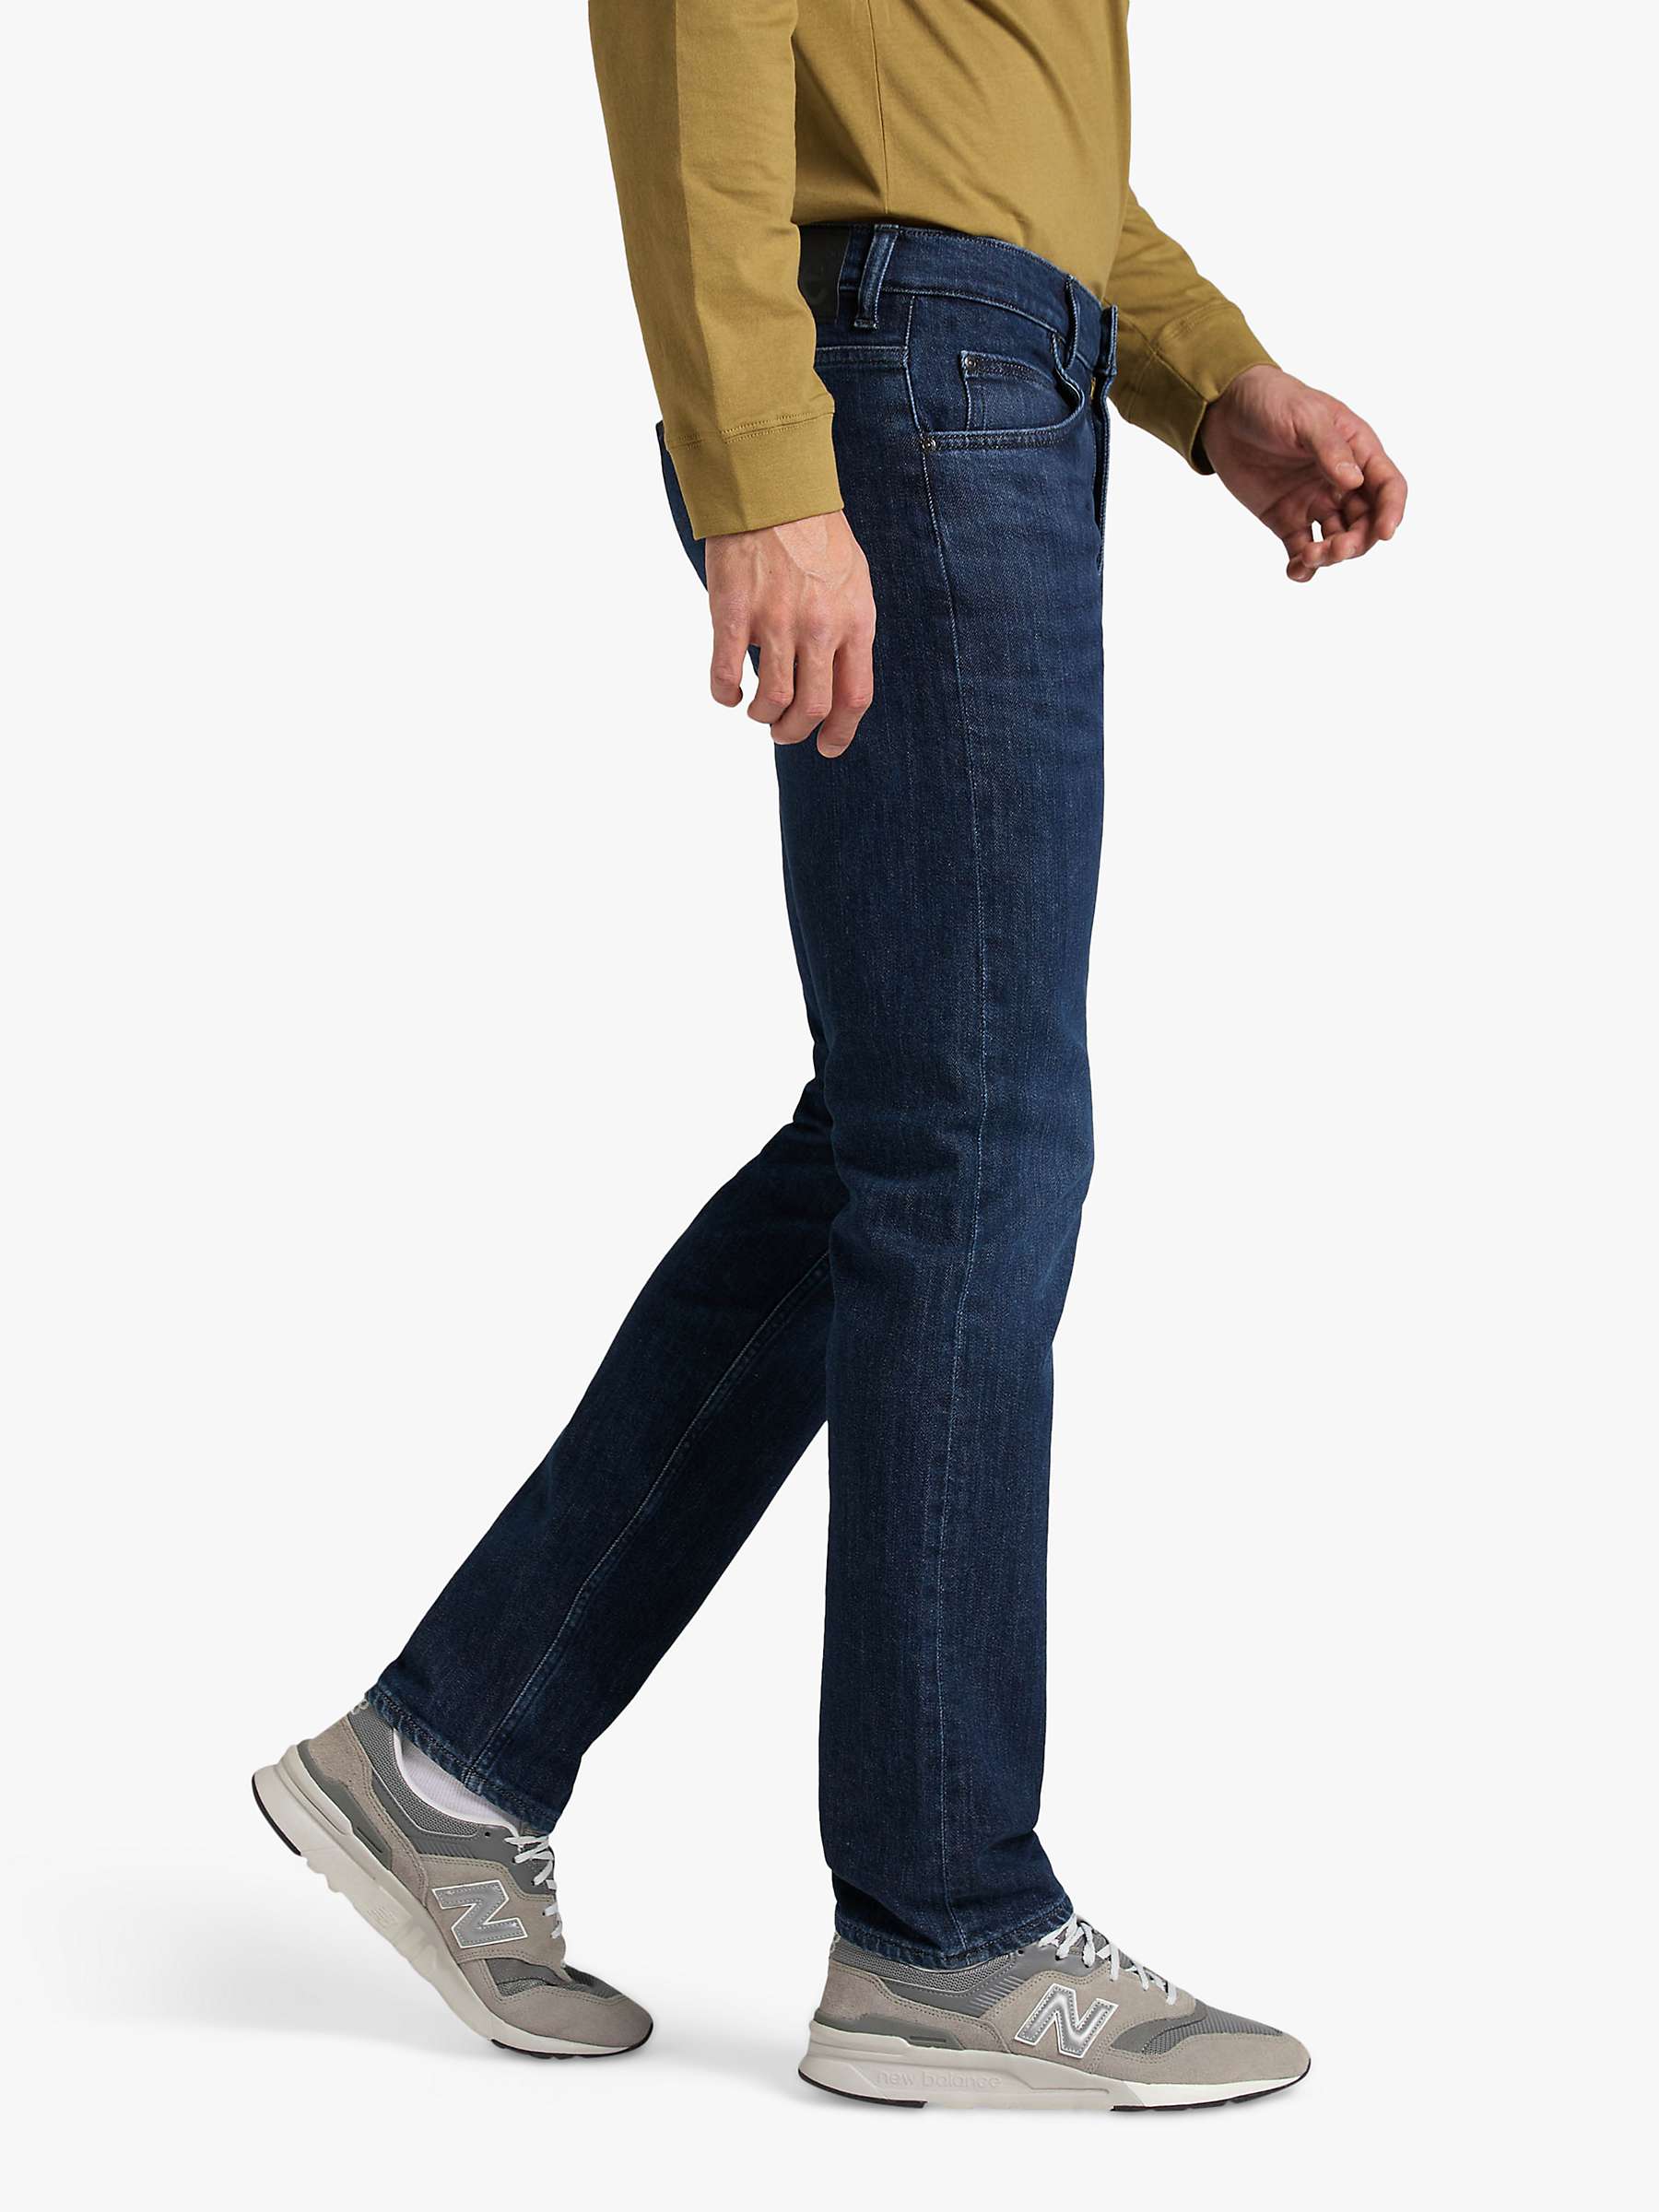 Buy Lee Original Slim Fit Denim Jeans, Blue Online at johnlewis.com